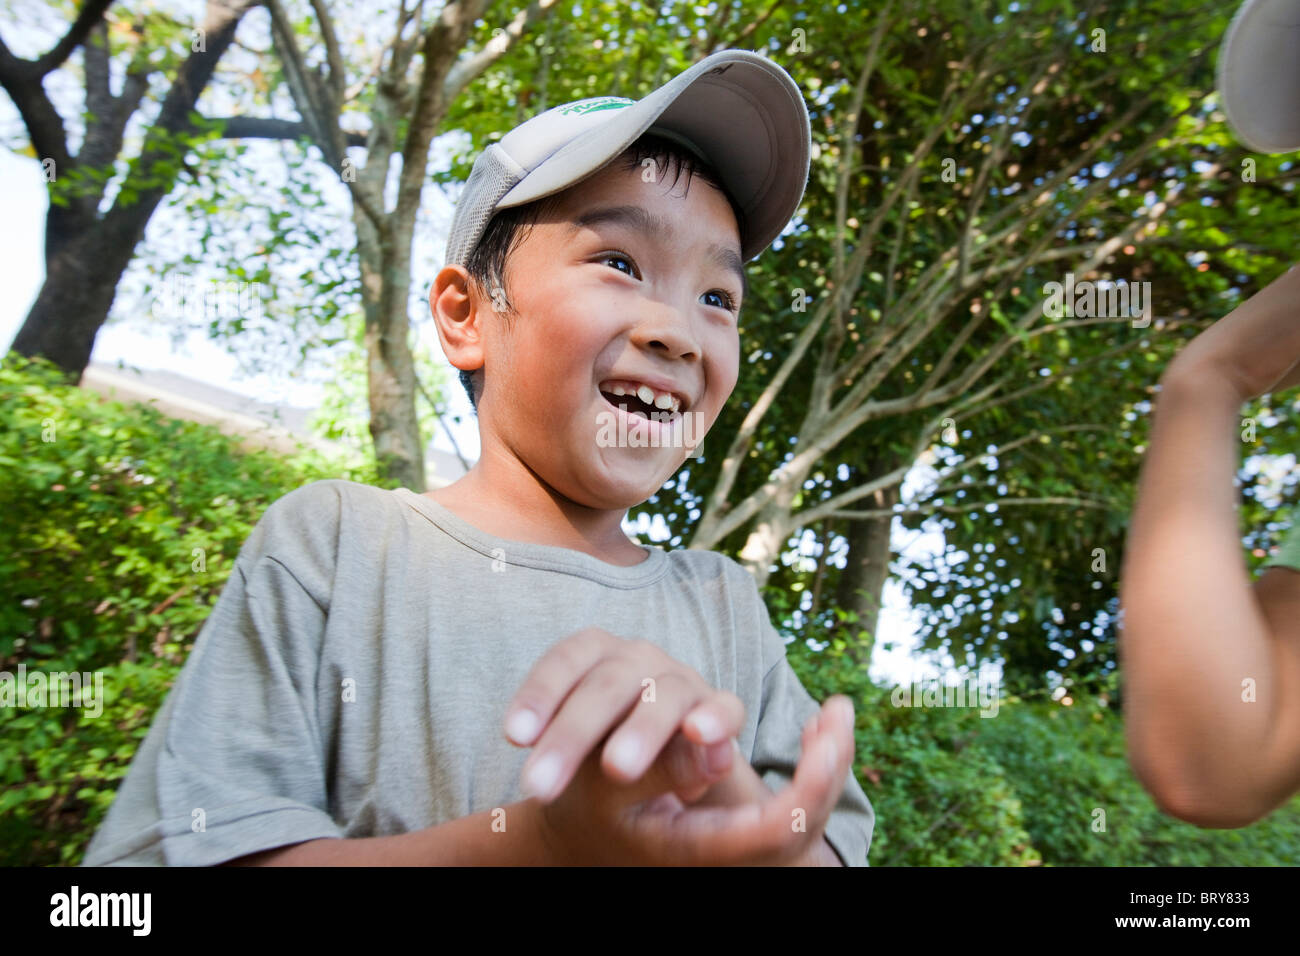 Niño usando una gorra de béisbol, sonriente, Japón Foto de stock